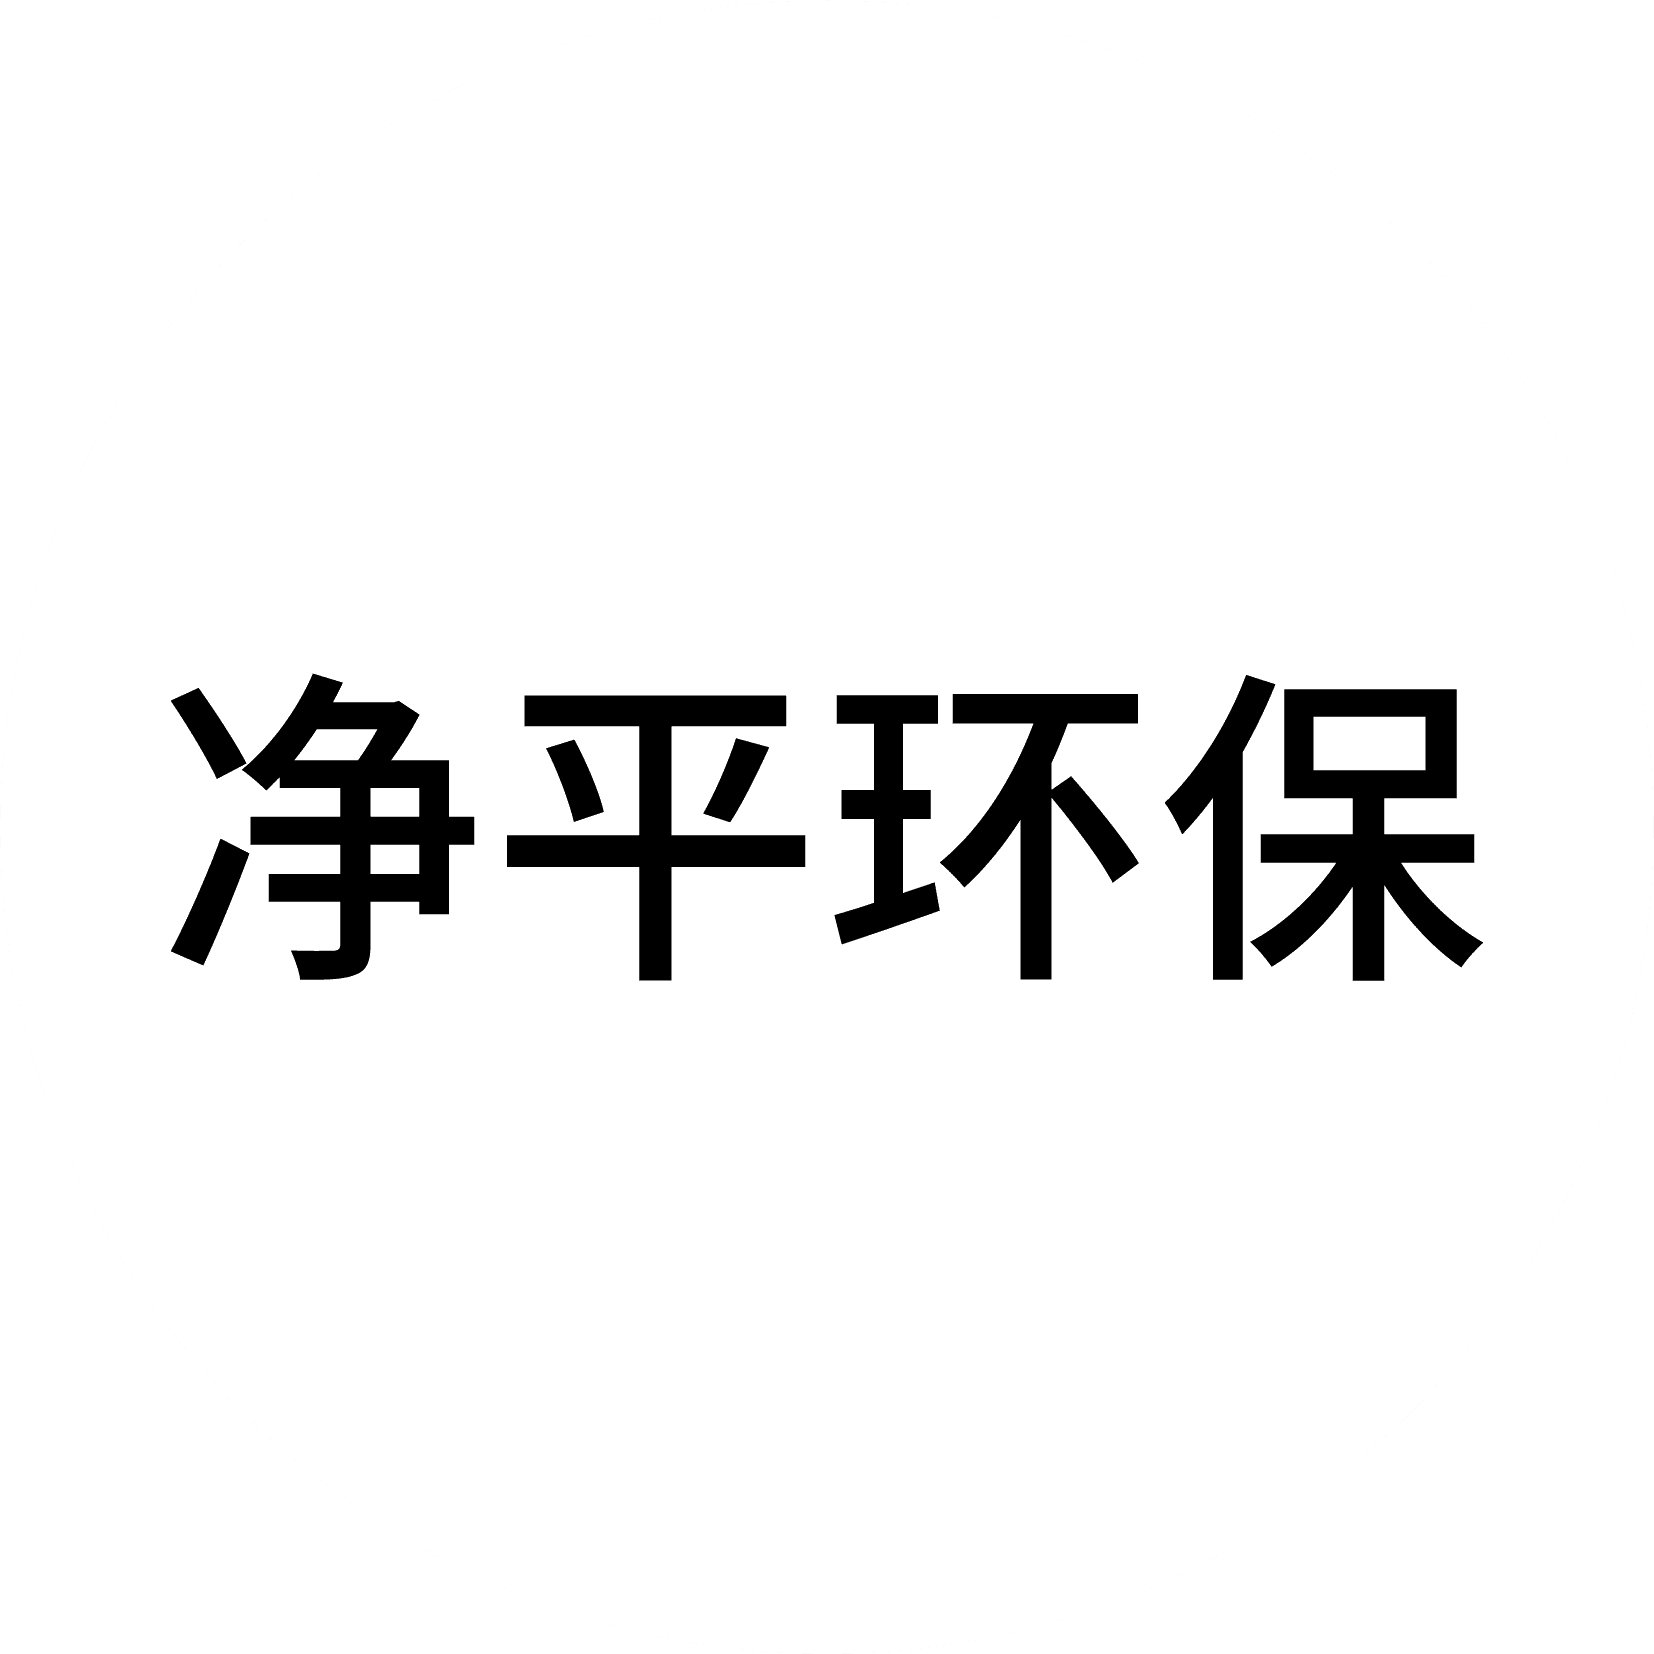 合作伙伴logo